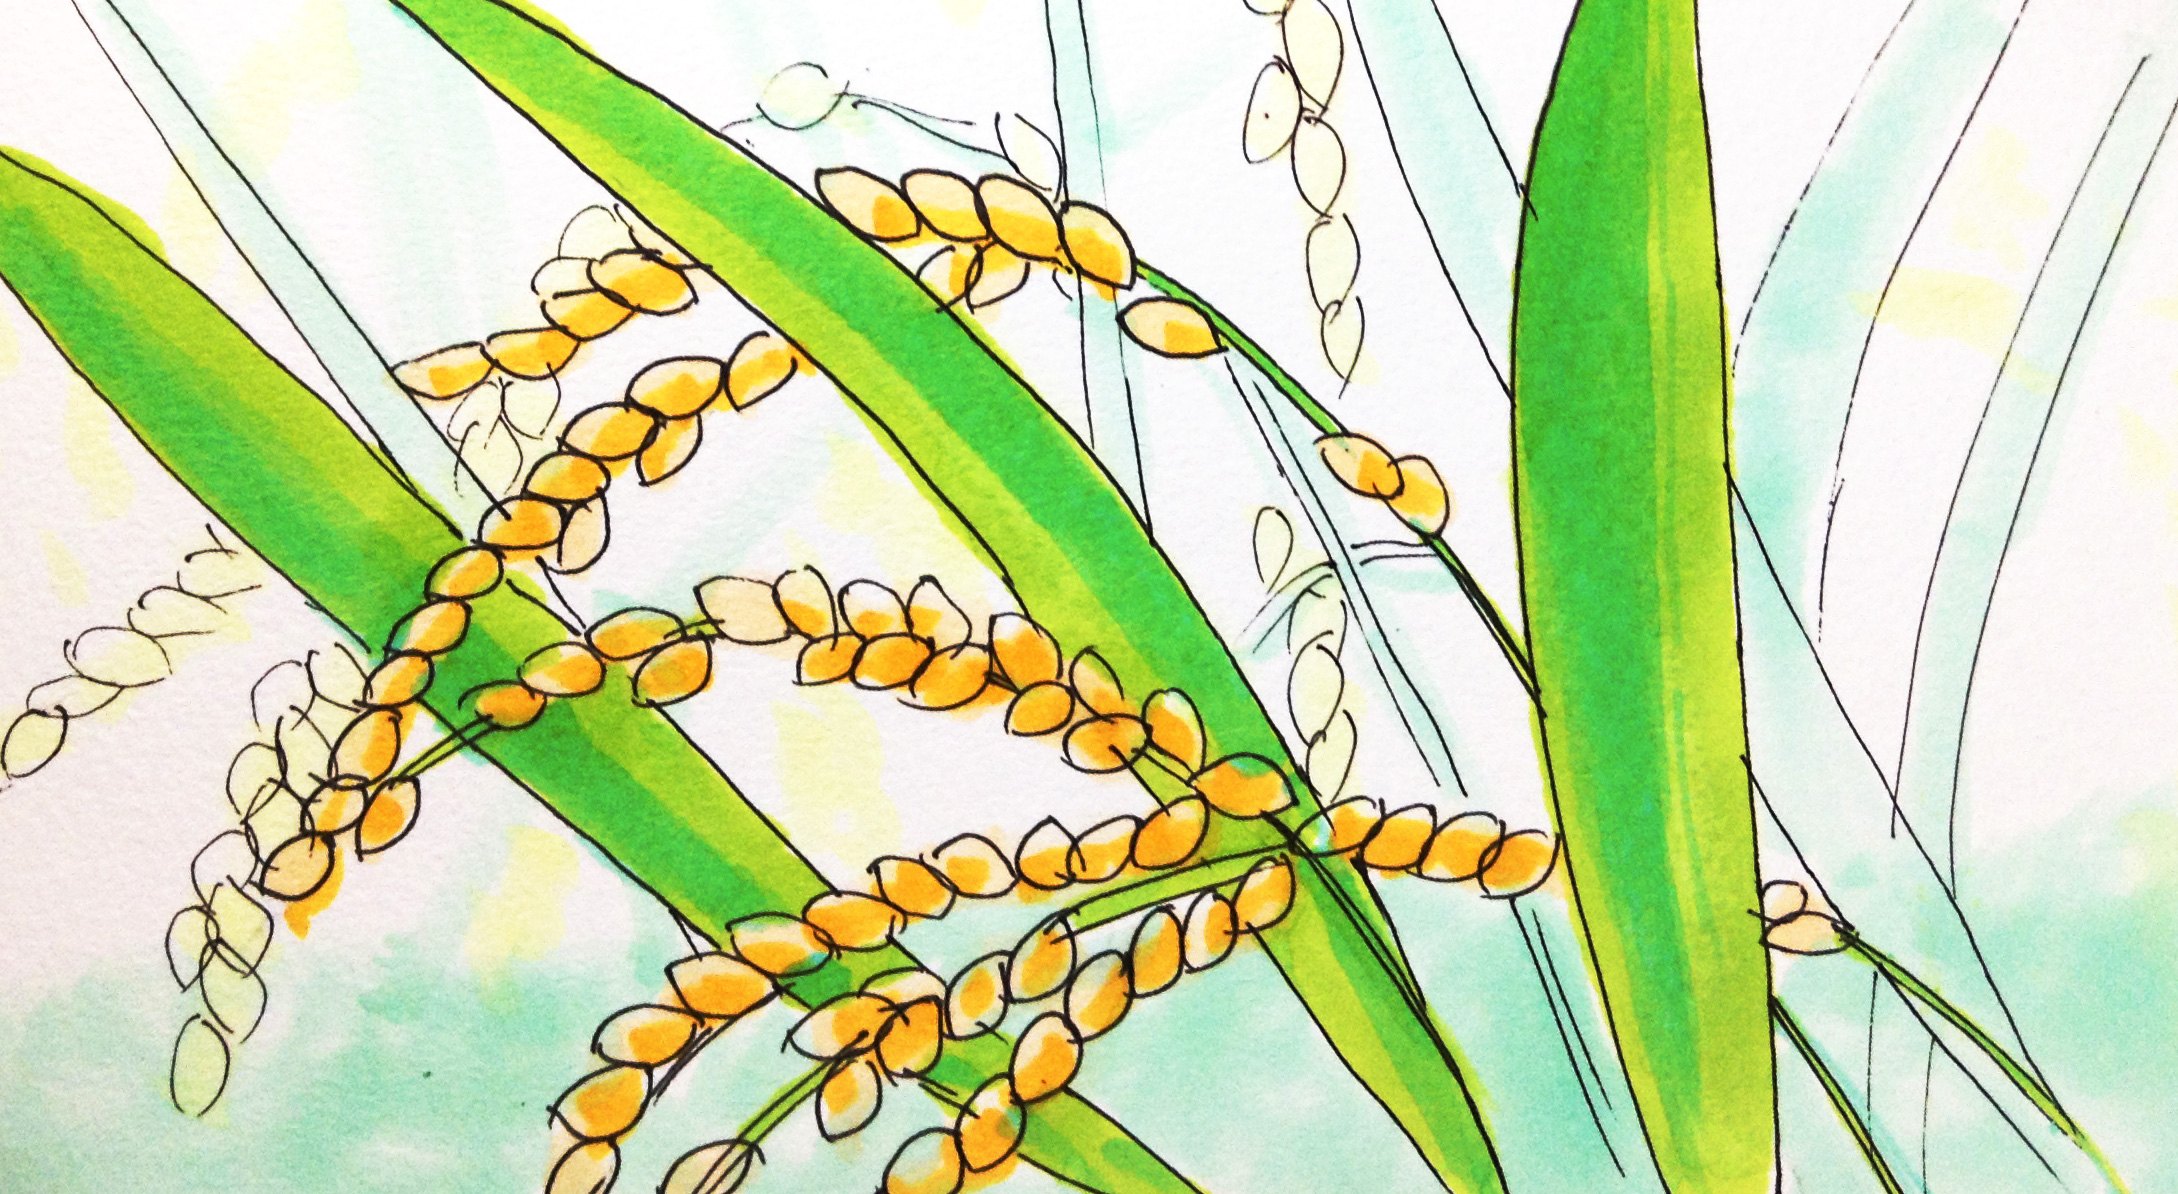 豊作・豊穣のシンボルの稲穂のイメージをコピックで描いたイラスト